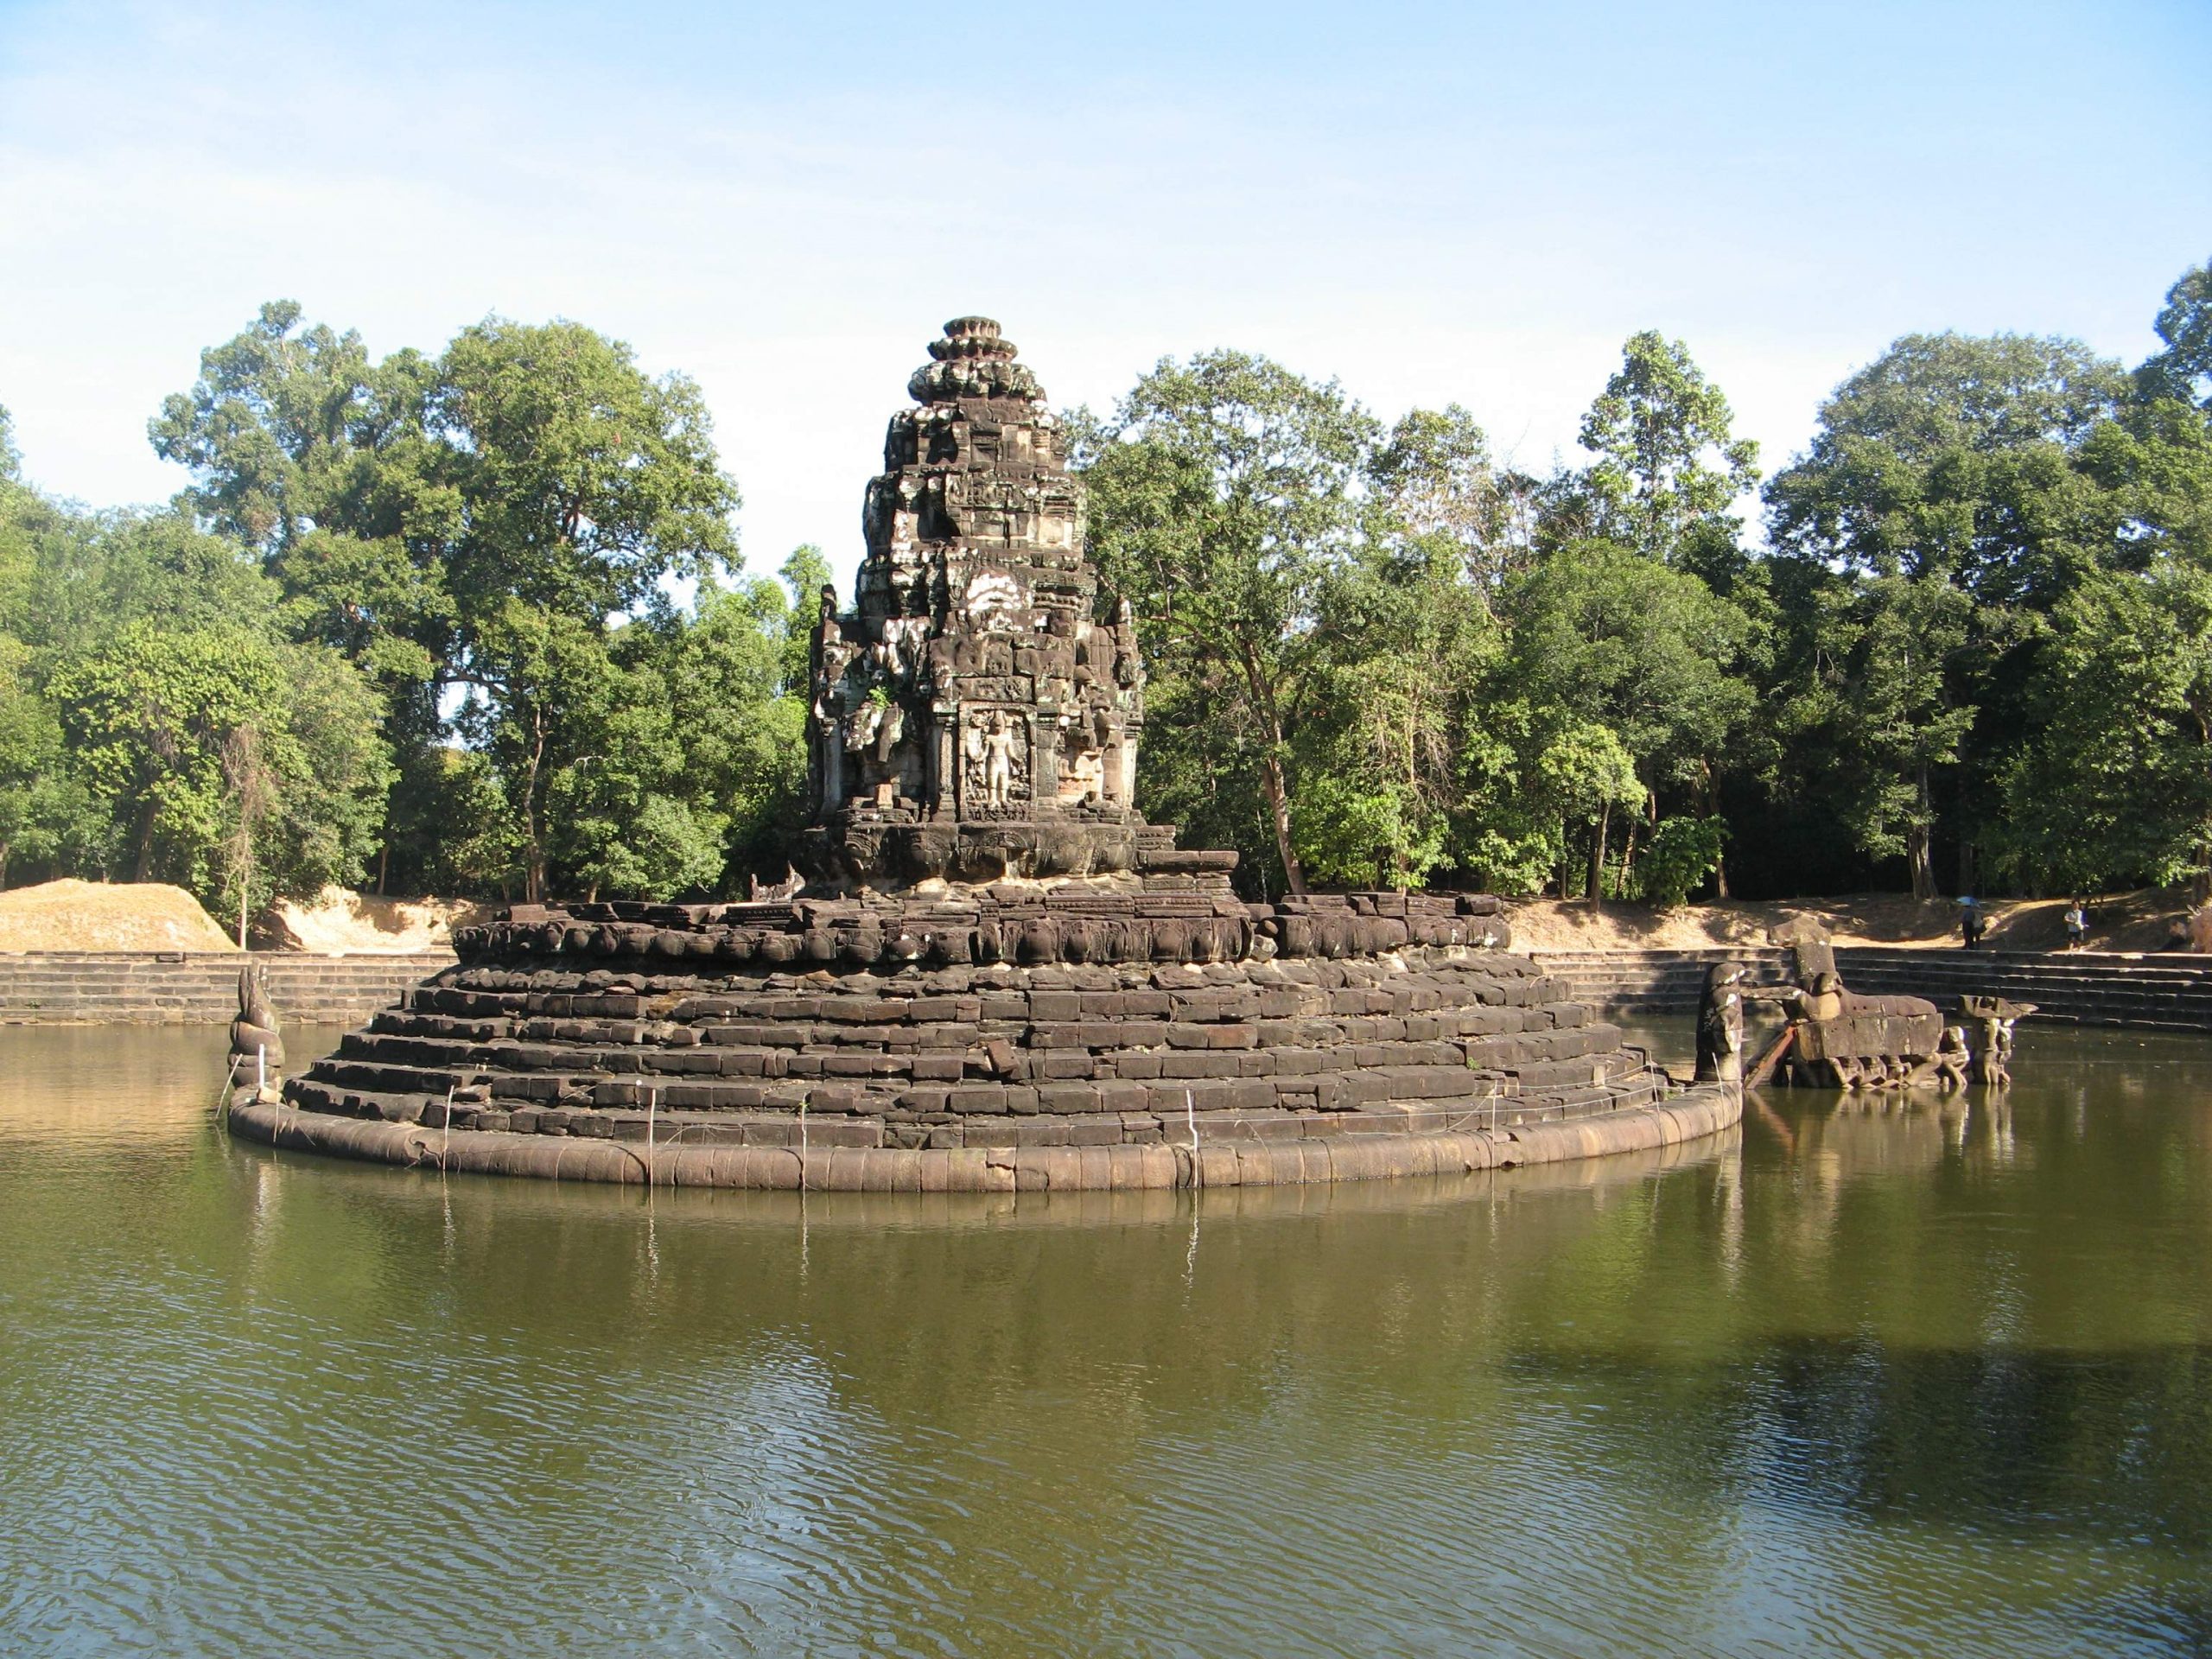 Neak Pean - Kiến trúc cổ xưa giữa hồ nước nhân tạo